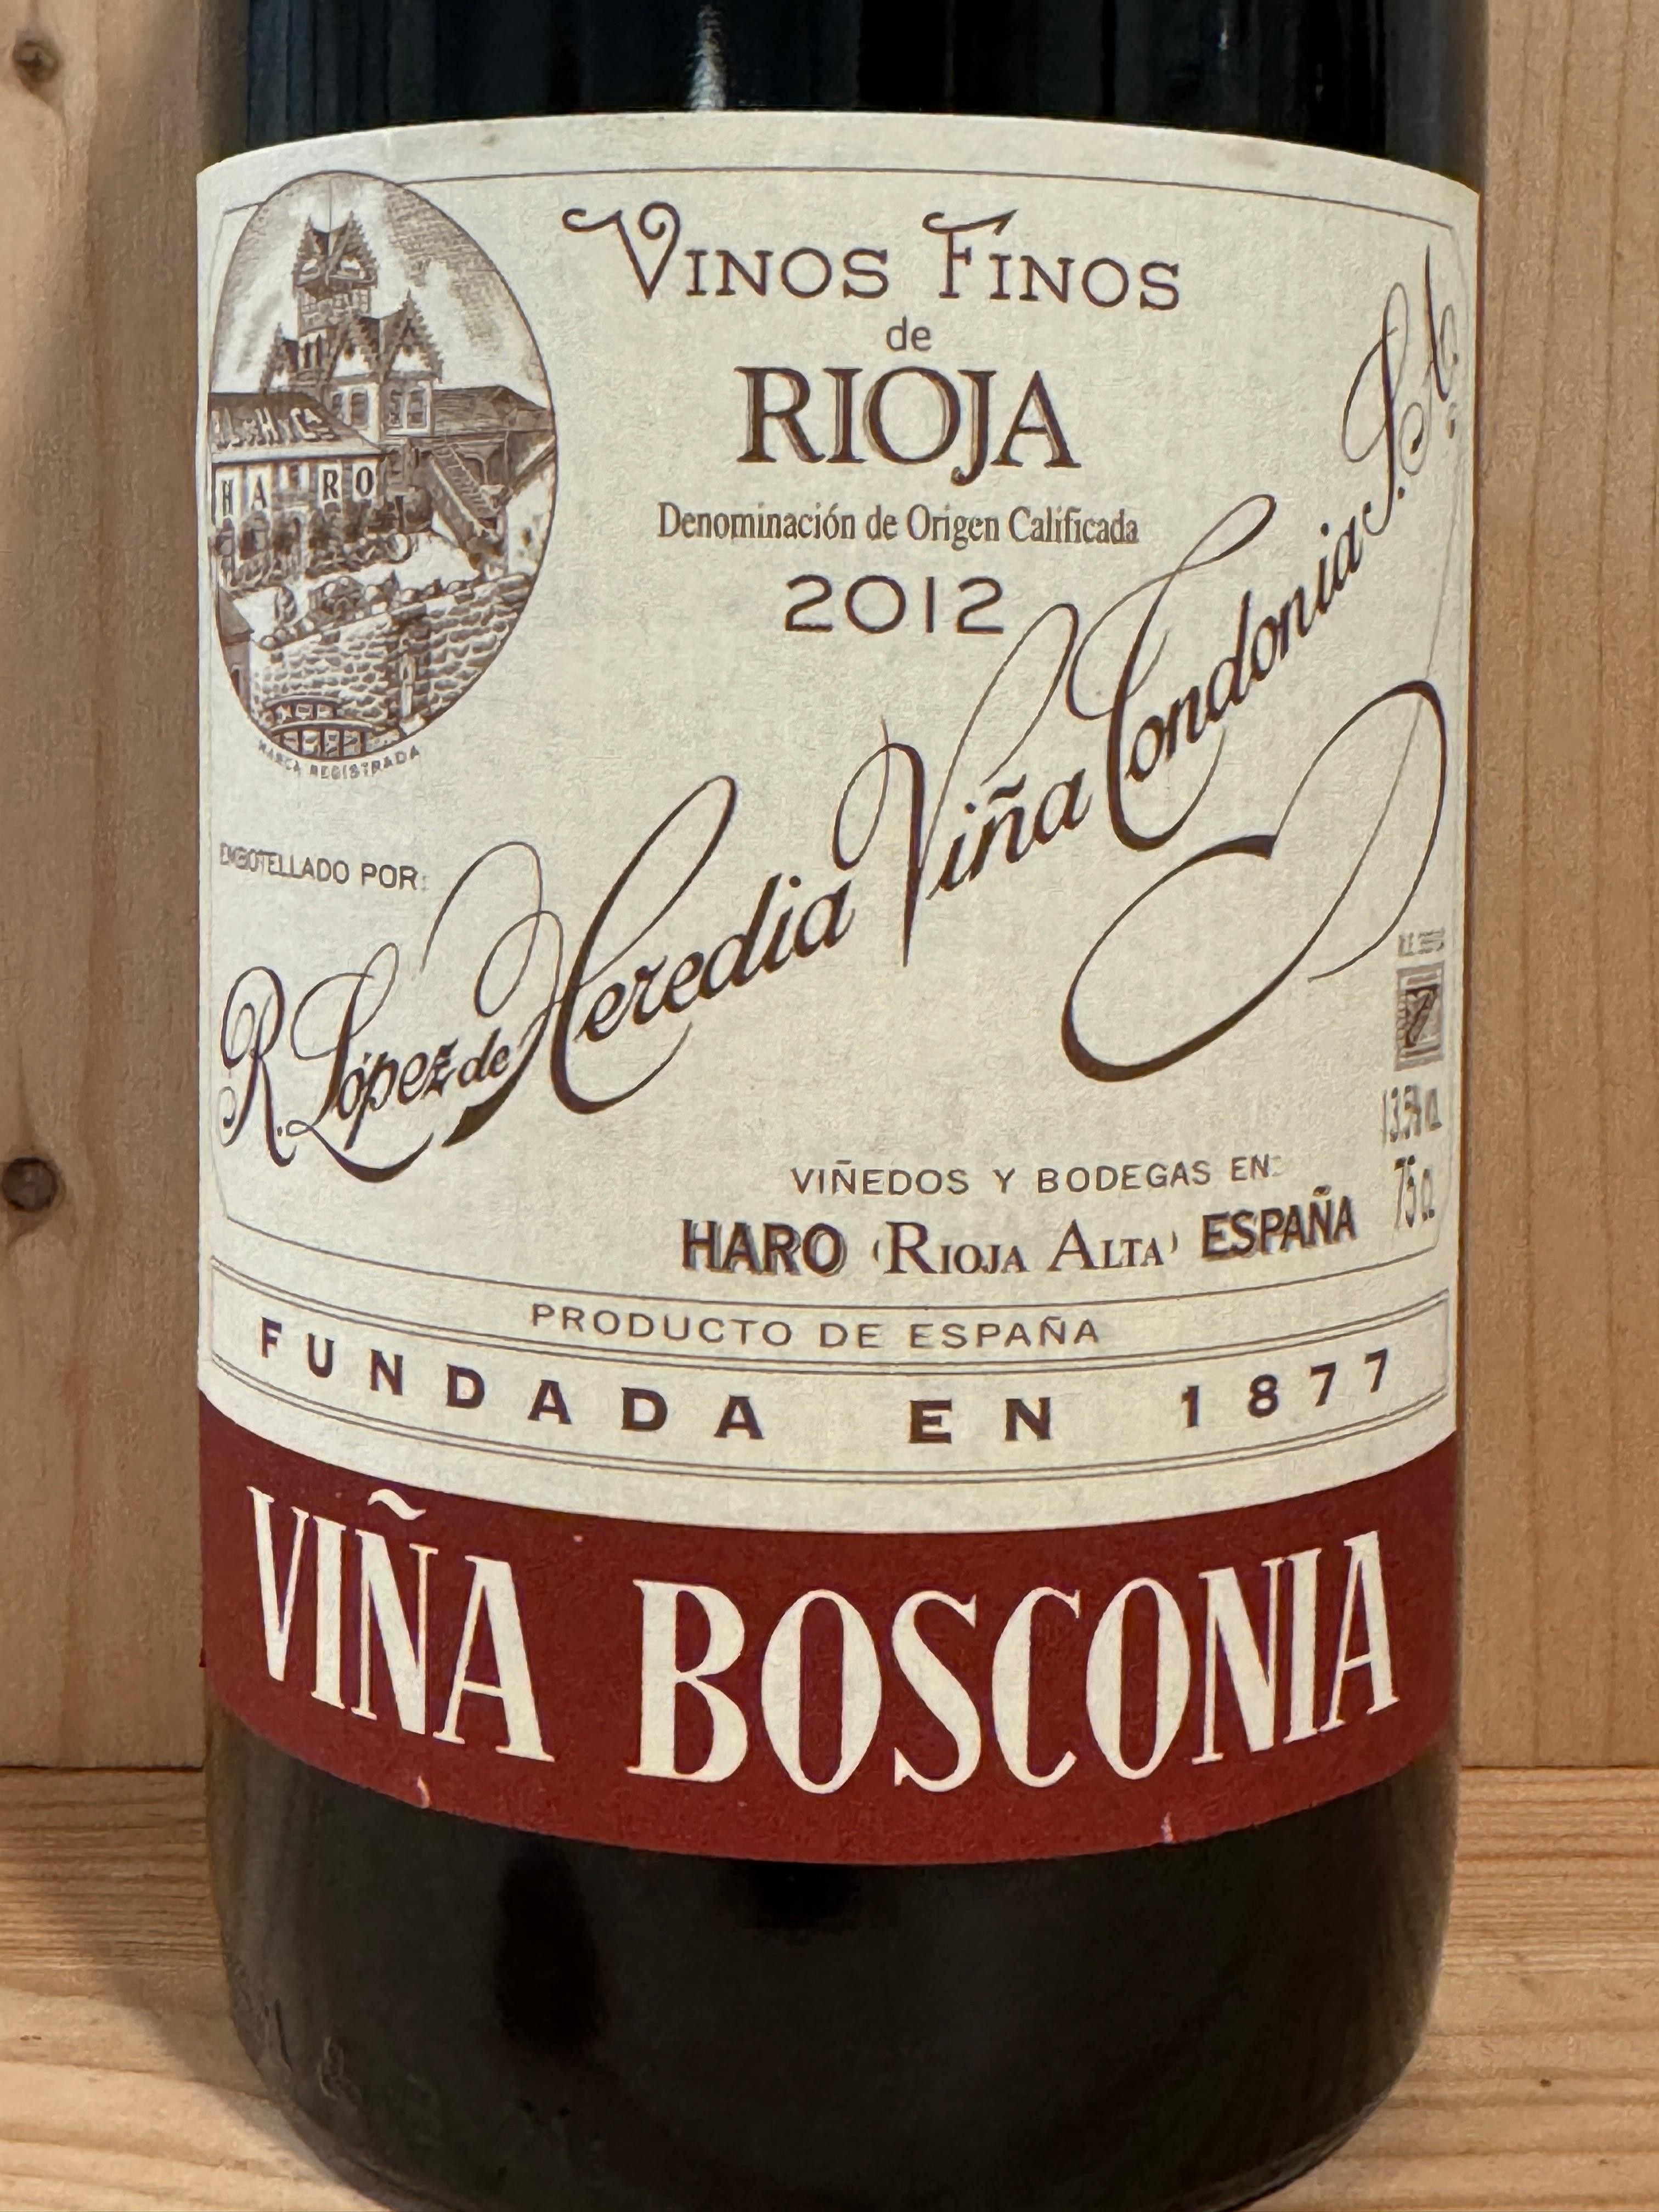 R. Lopez de Heredia "Viña Bosconia" 2012: Rioja, Spain